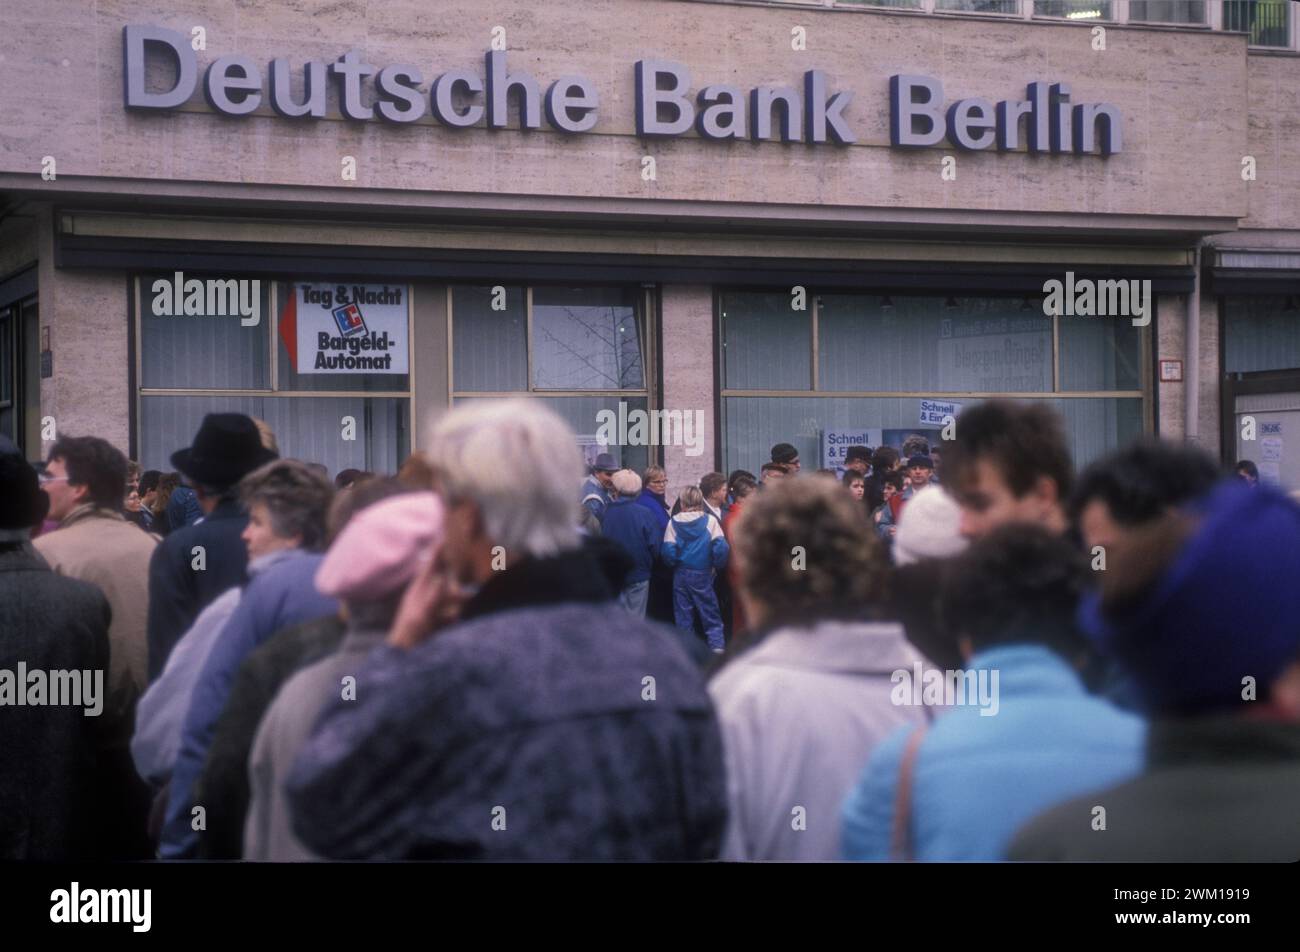 4065465 Berlin est, 1989. Citoyens de l'Allemagne de l'est dans la file d'attente au comptoir d'une banque de Berlin Ouest pour recueillir un bonus de 100 marks, cadeau de l'Allemagne de l'Ouest après l'ouverture de la frontière entre l'Allemagne de l'est et l'Allemagne de l'Ouest ; (add.info.: Berlin (1989) Berlino est, 1989. Cittadini della Germania est in coda allo sportello di una banca di Berlino Ovest per riscuotere un bonus di 100 marchi, regalo della Germania Ovest dopo l'apertura delle frontiere tra Germania est e Germania Ovest) ; © Marcello Mencarini. Tous droits réservés 2024. Banque D'Images